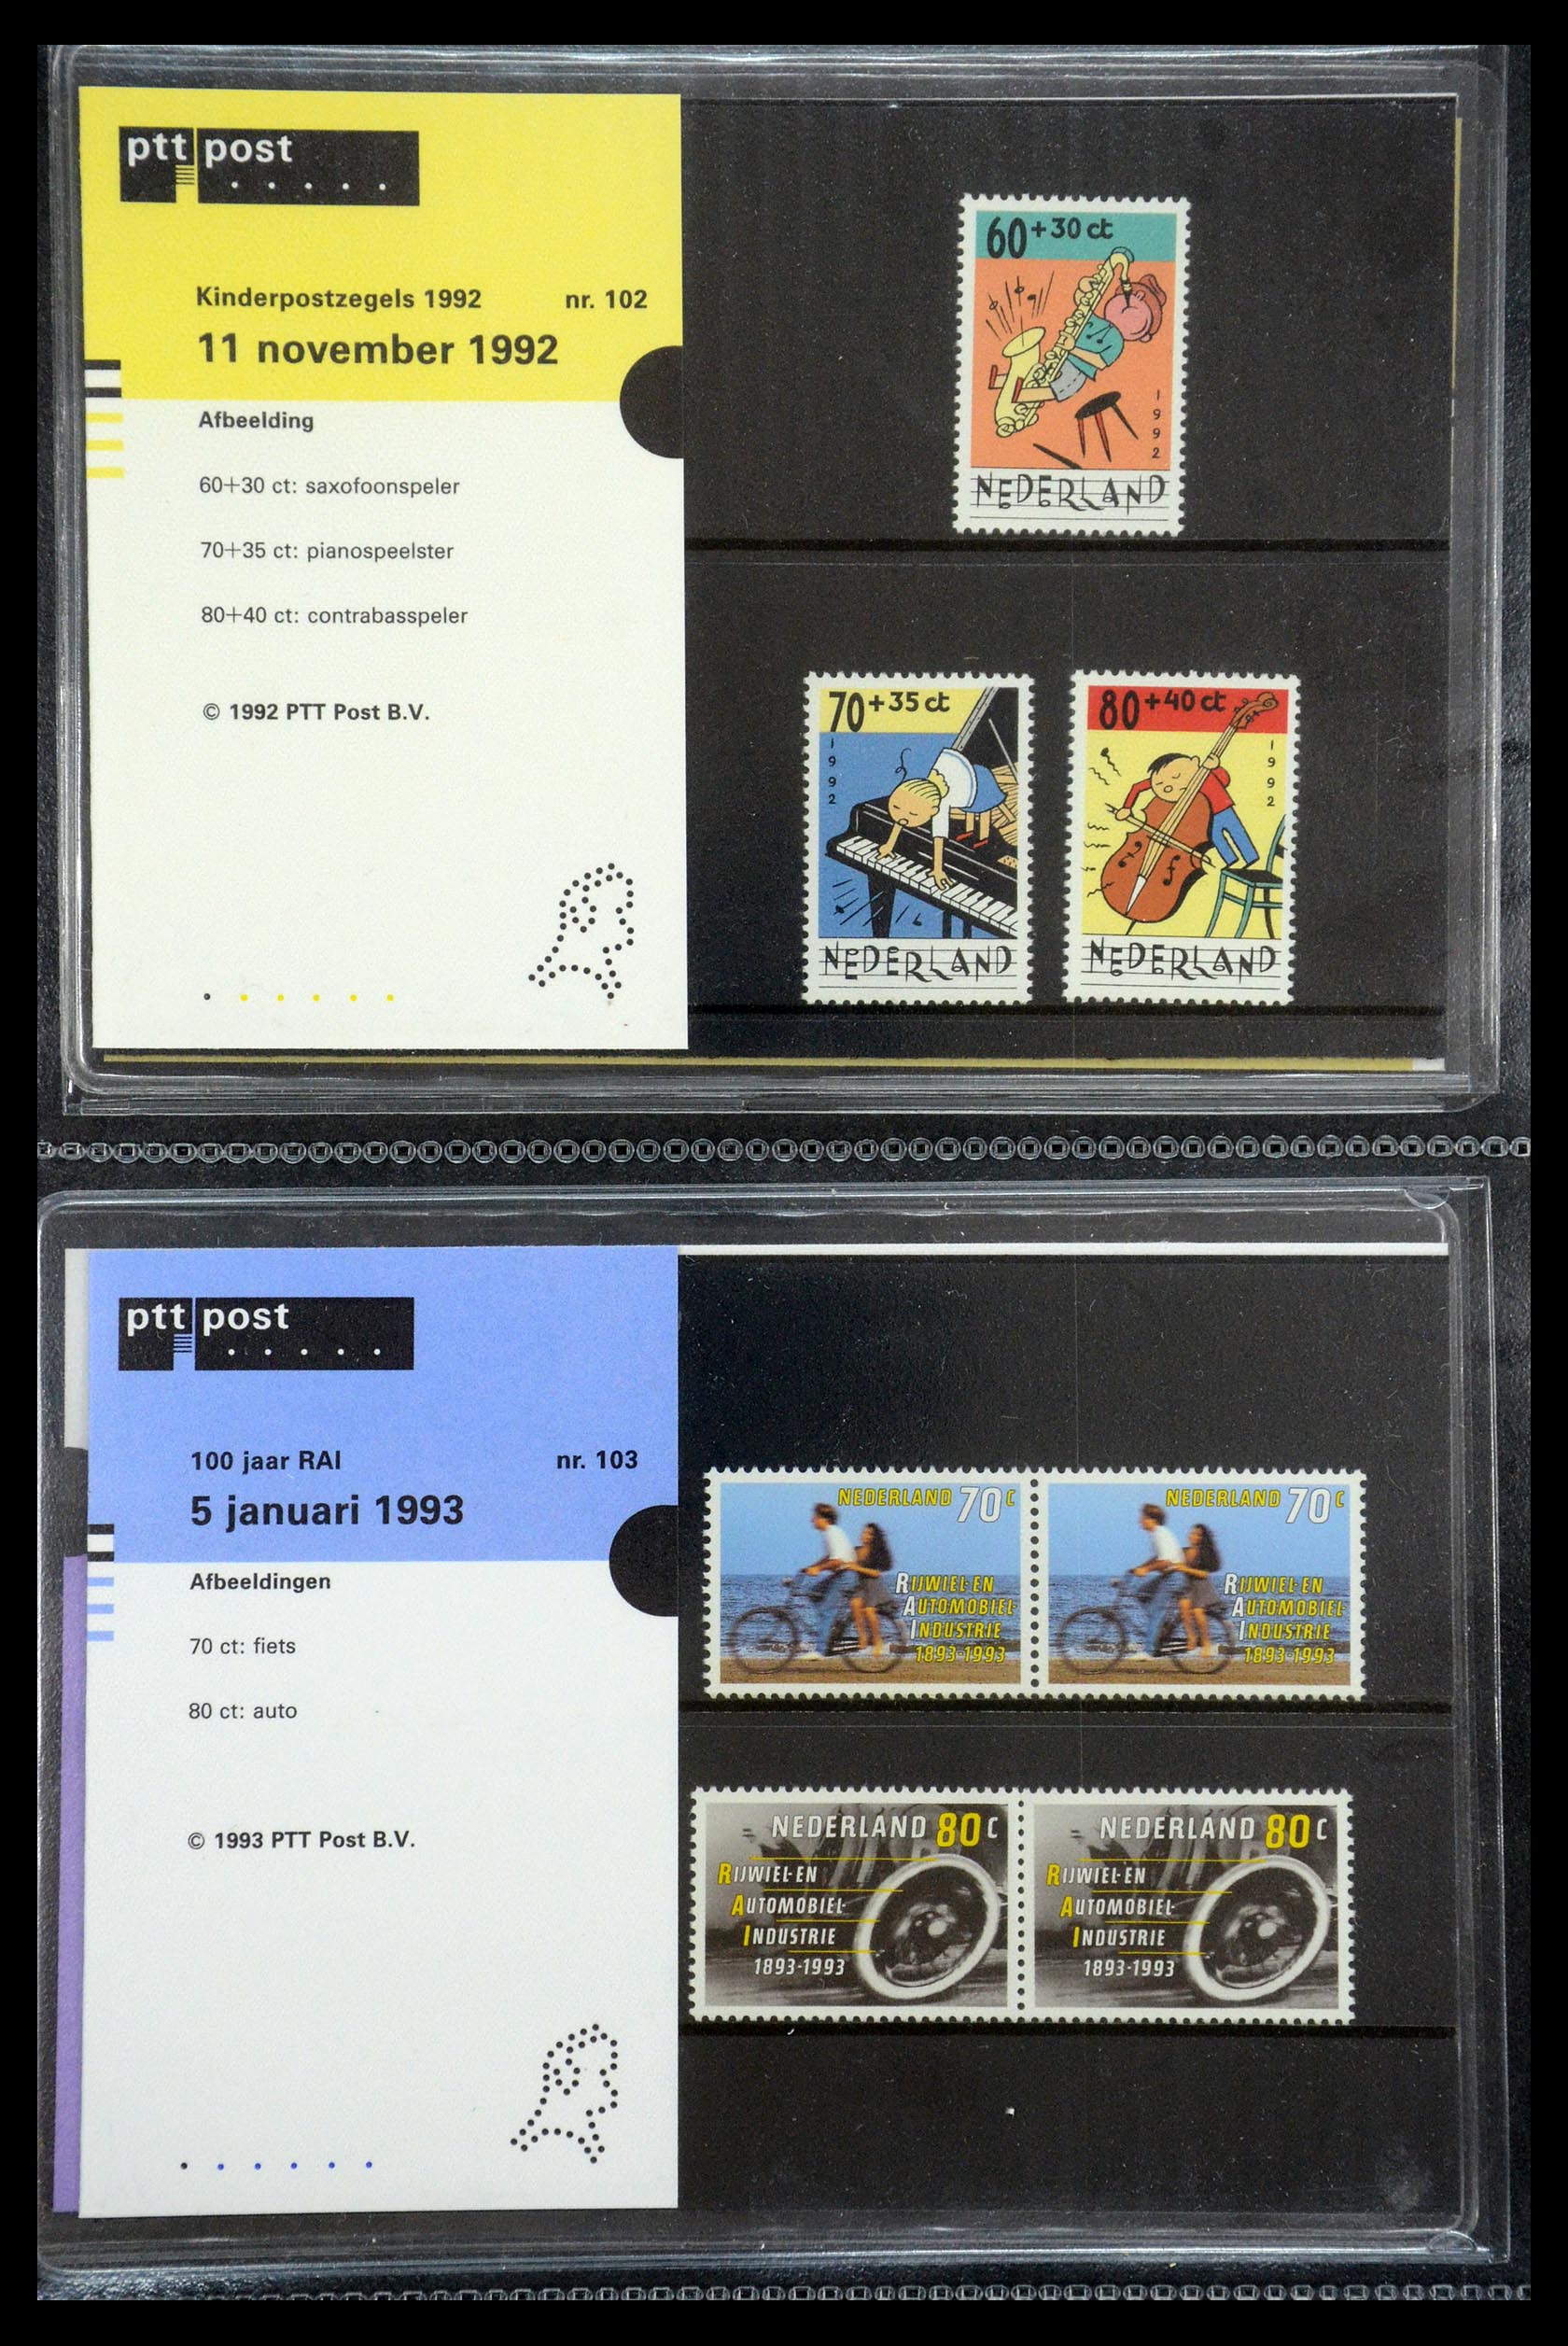 35187 052 - Stamp Collection 35187 Netherlands PTT presentation packs 1982-2019!